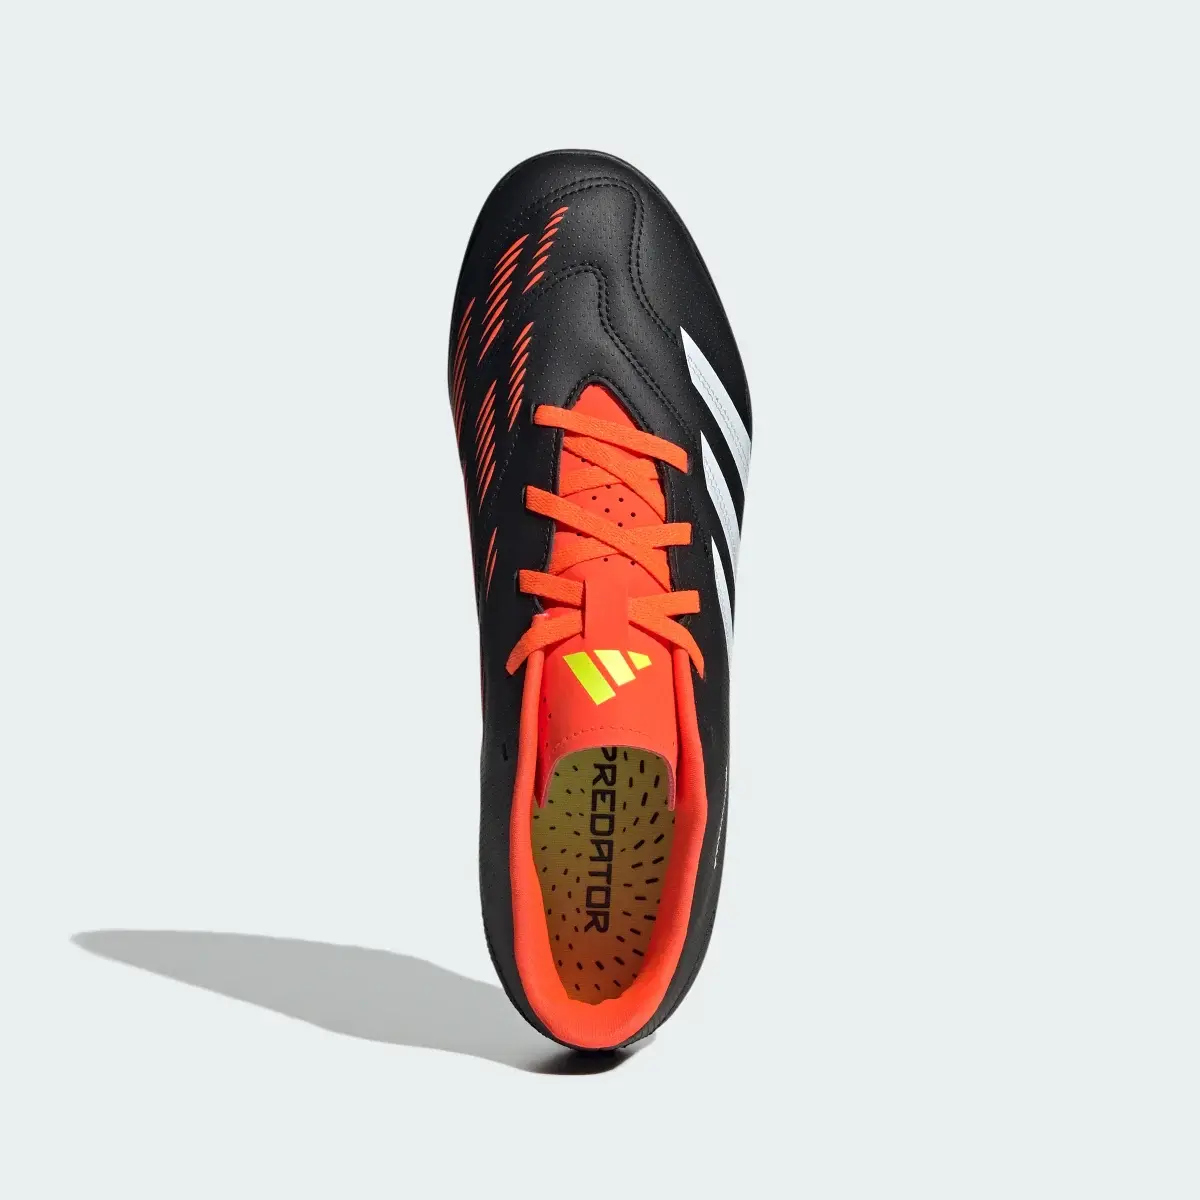 Adidas Predator Club Turf Football Boots. 3